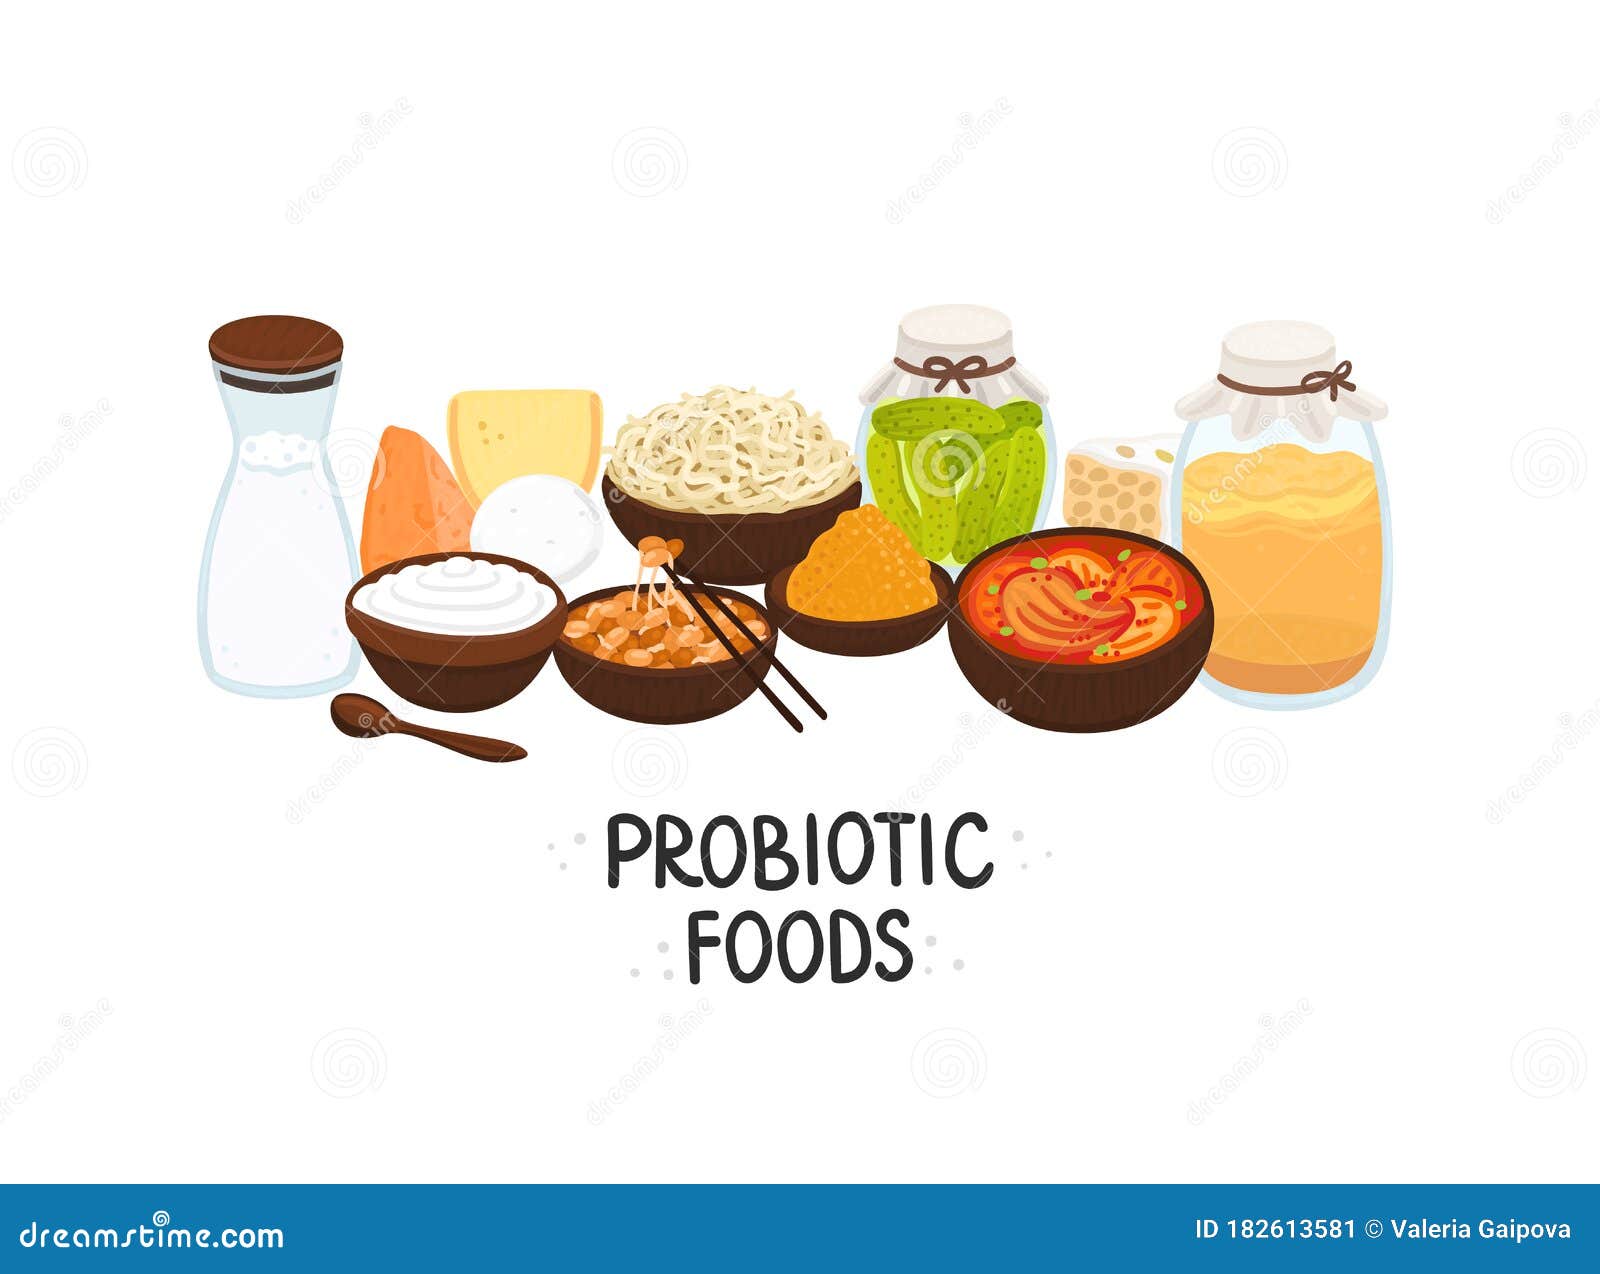  probiotic foods. best sources of probiotics. beneficial bacteria improve health.  is for label, brochure